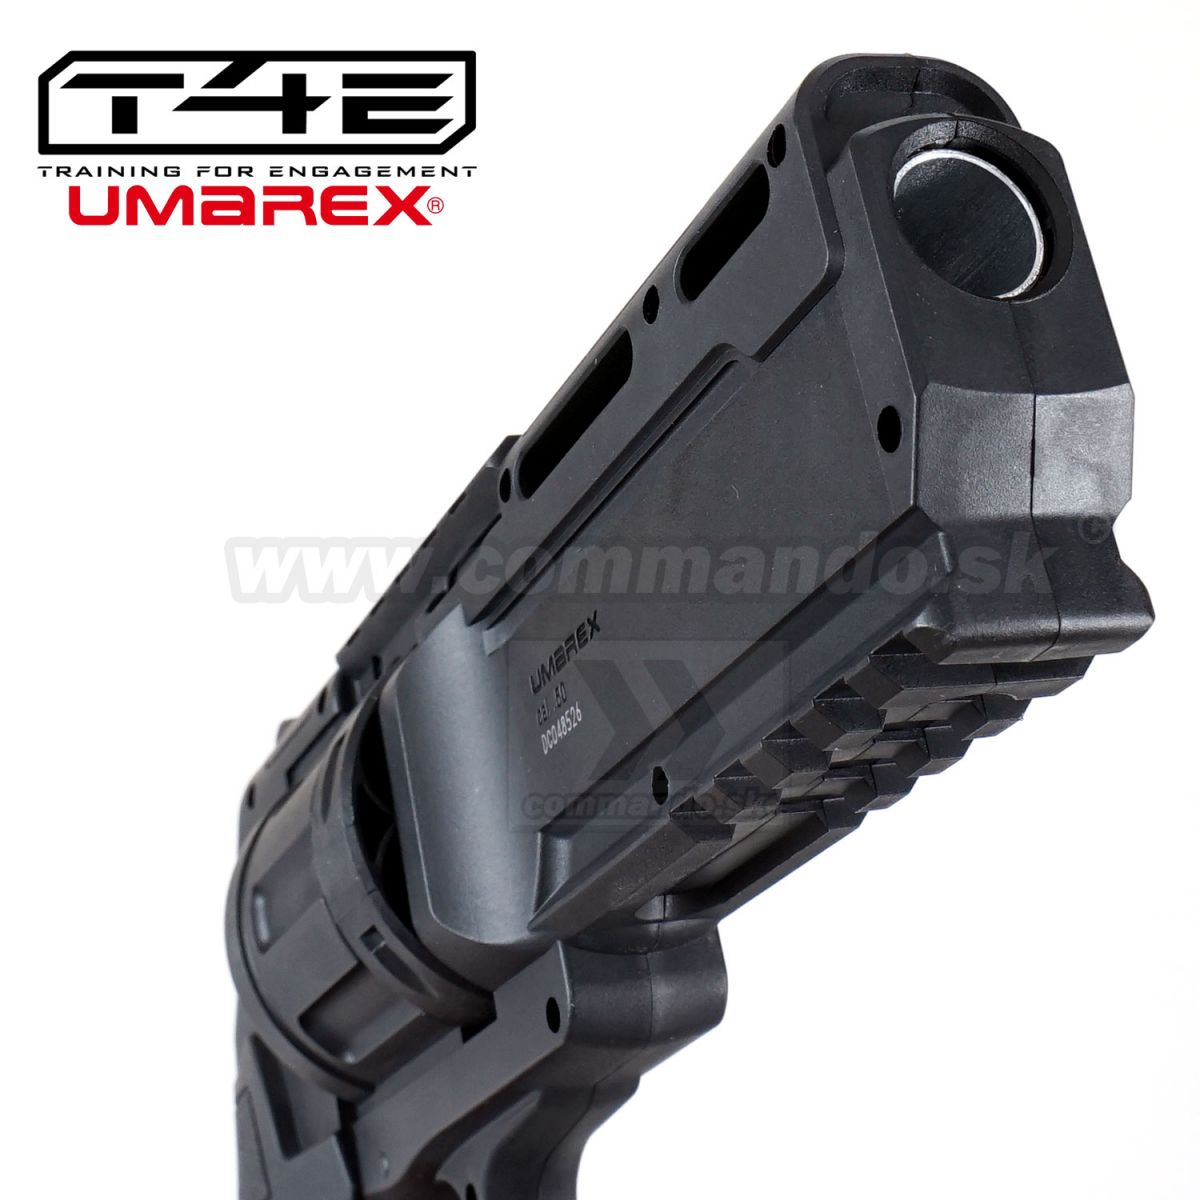 RAM Revolver Umarex T4E HDR .50 11J